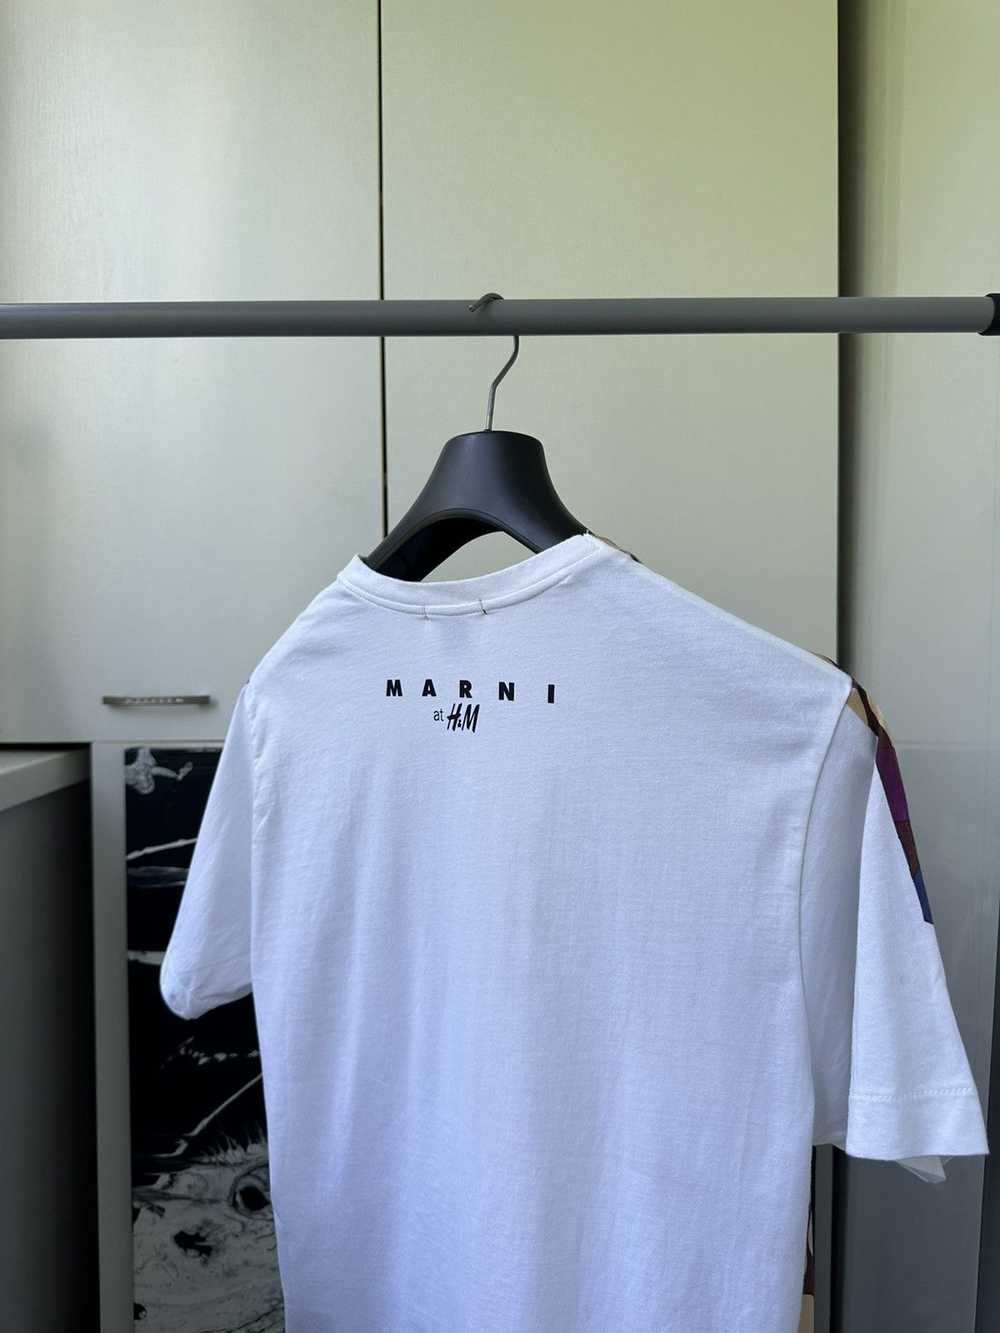 H&M × Marni Marni at H&M Polka Dot Tee - image 3